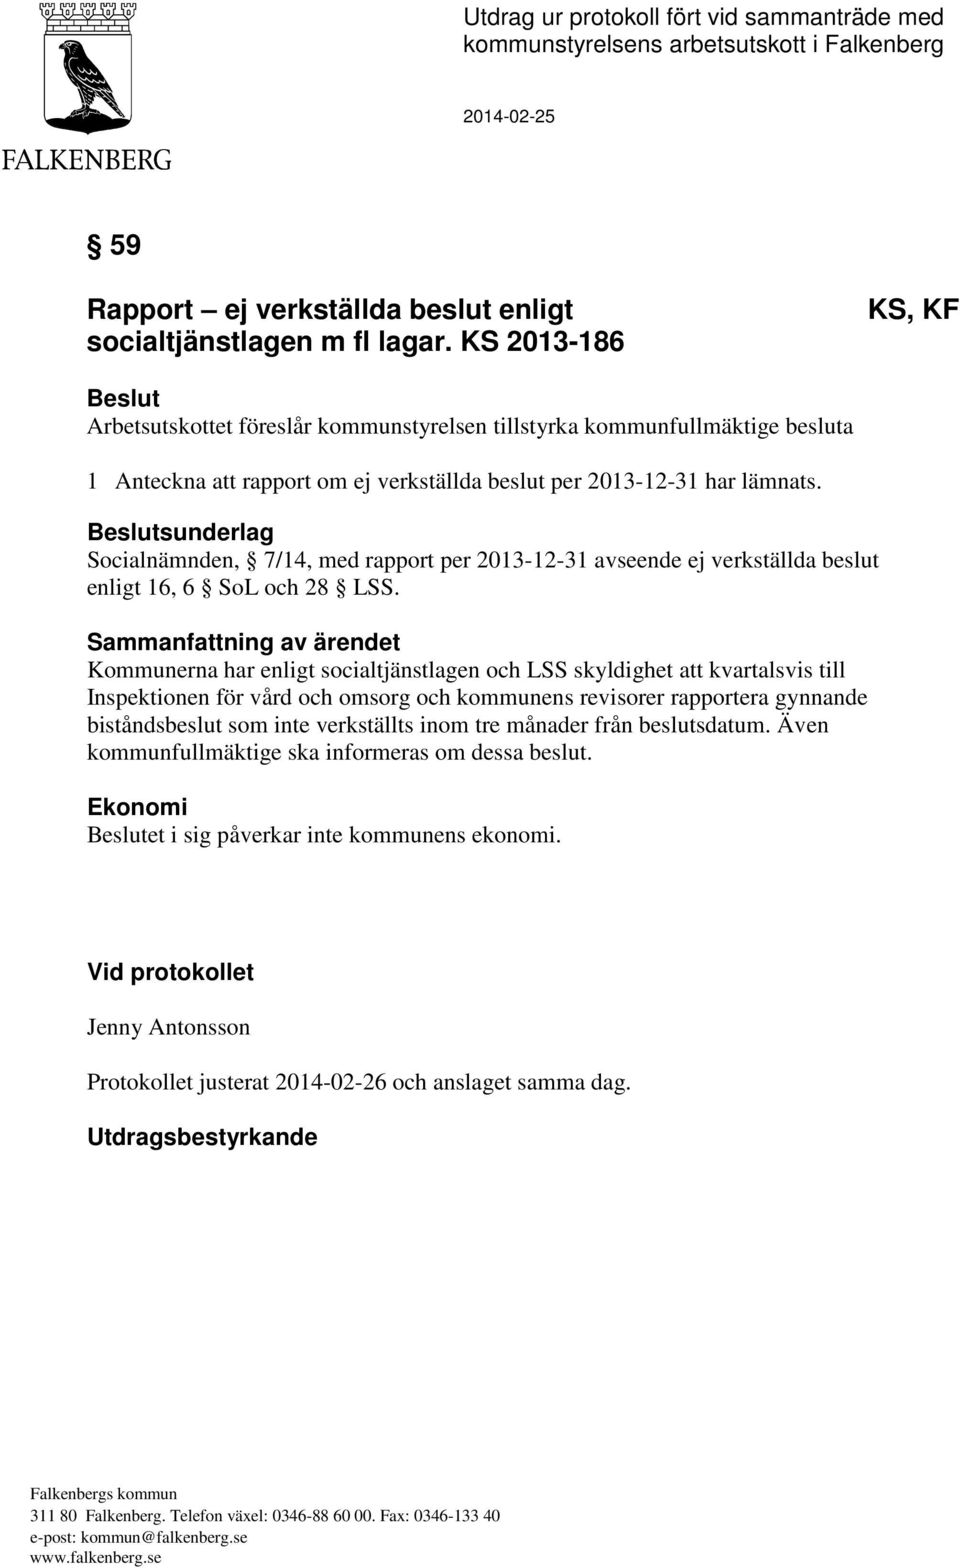 Beslutsunderlag Socialnämnden, 7/14, med rapport per 2013-12-31 avseende ej verkställda beslut enligt 16, 6 SoL och 28 LSS.